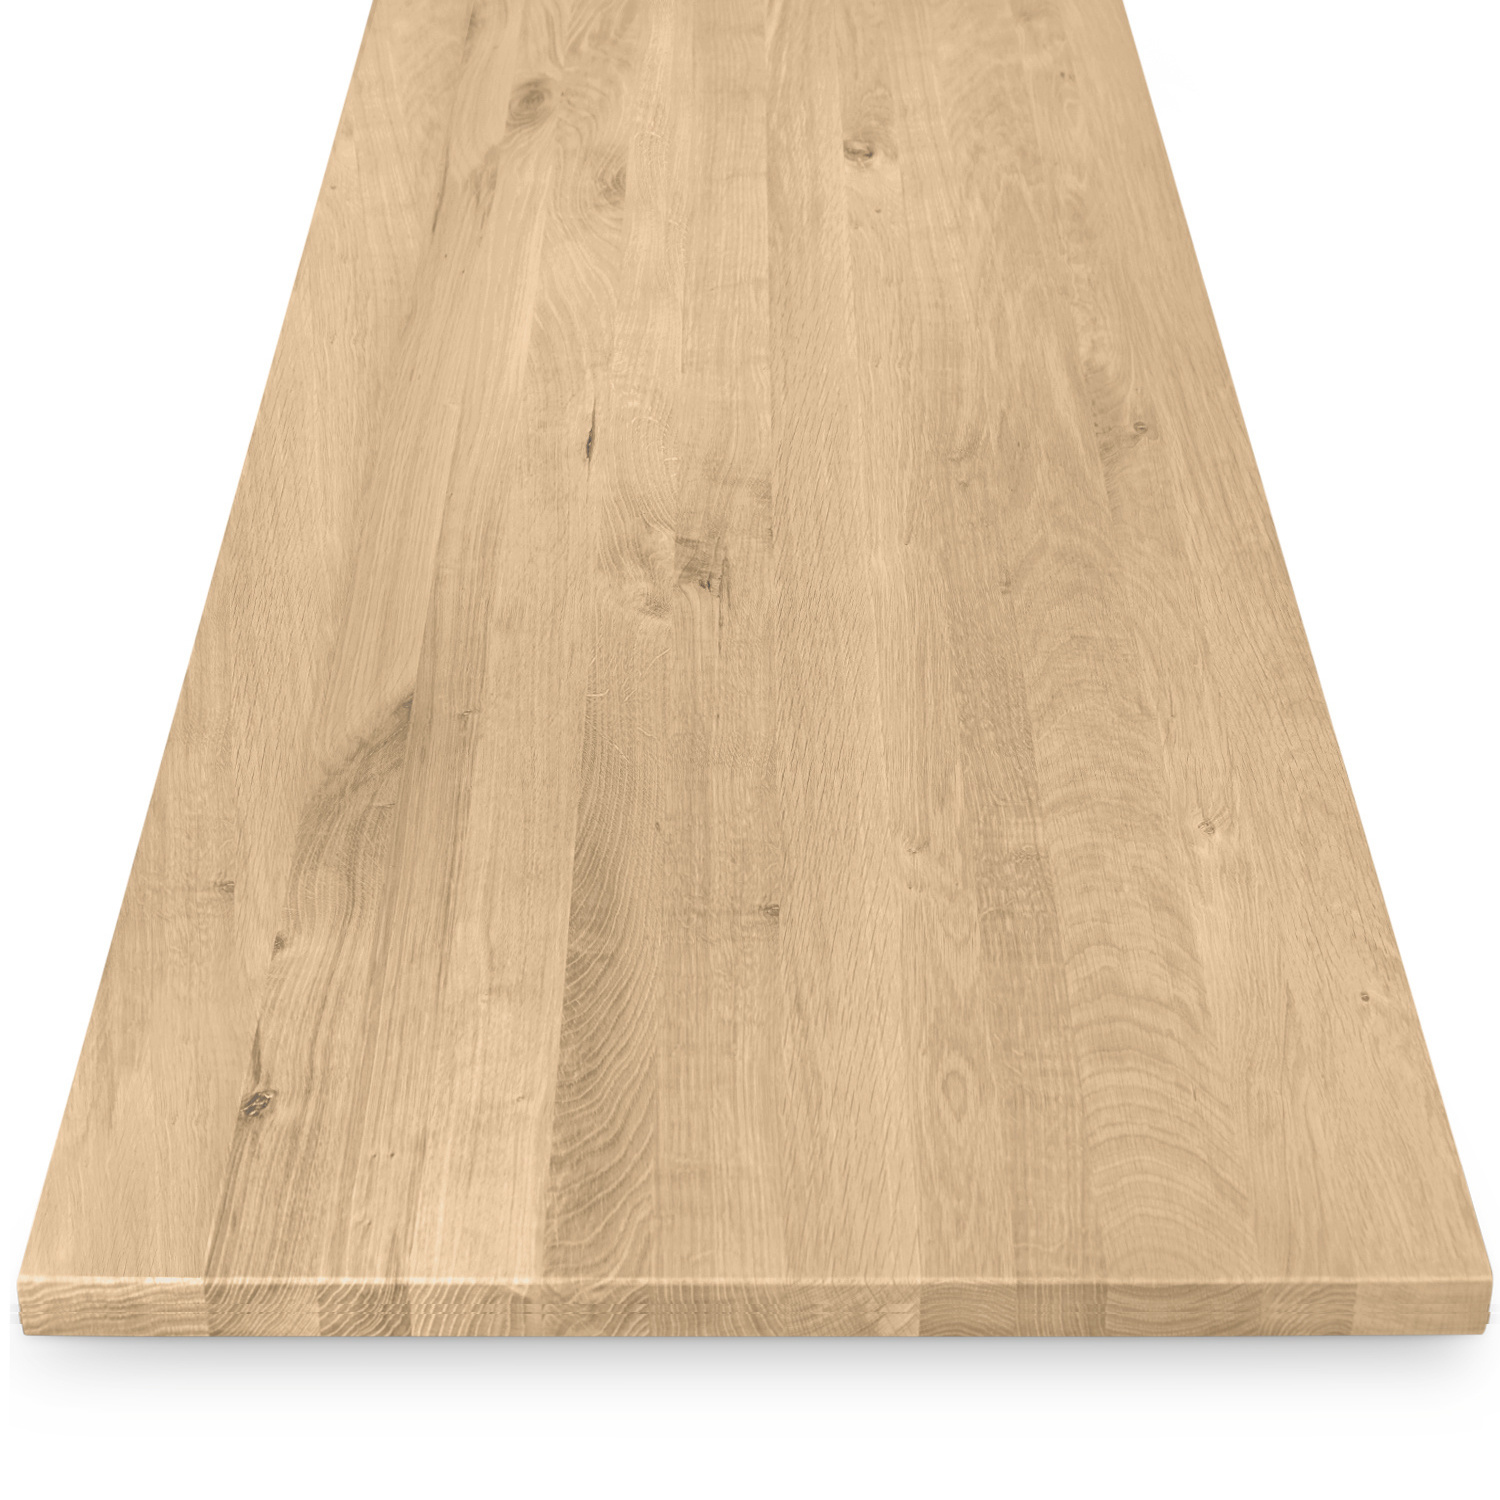  Eiken tafelblad op maat - 2,3 cm dik (1-laag) - rustiek Europees eikenhout - verlijmd kd 8-12% - 50-120x50-300 cm